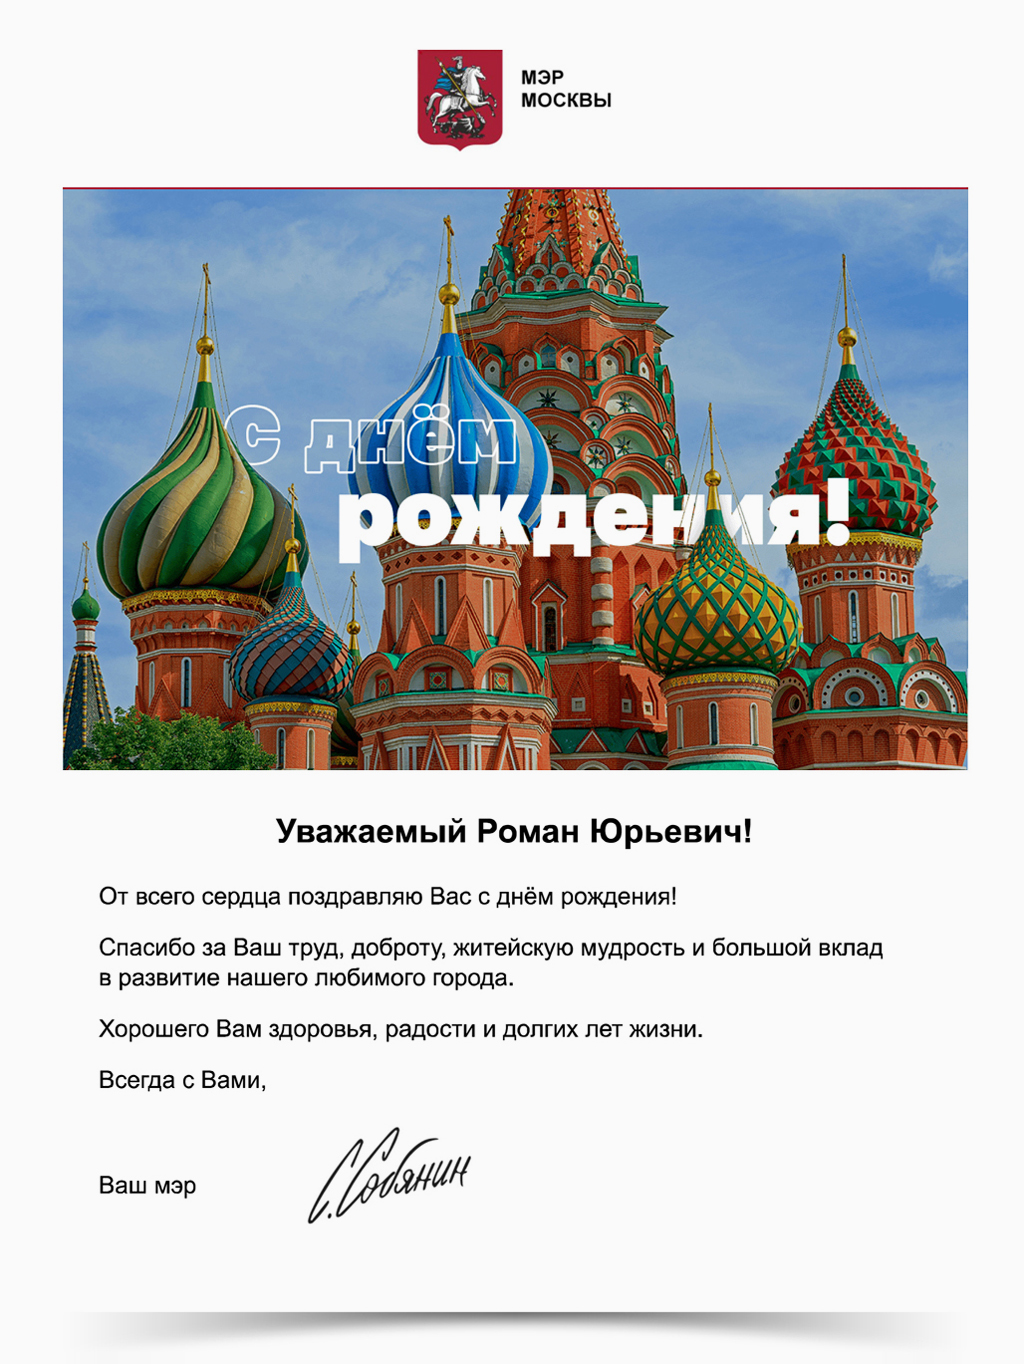 Поздравление от Мэра Москвы